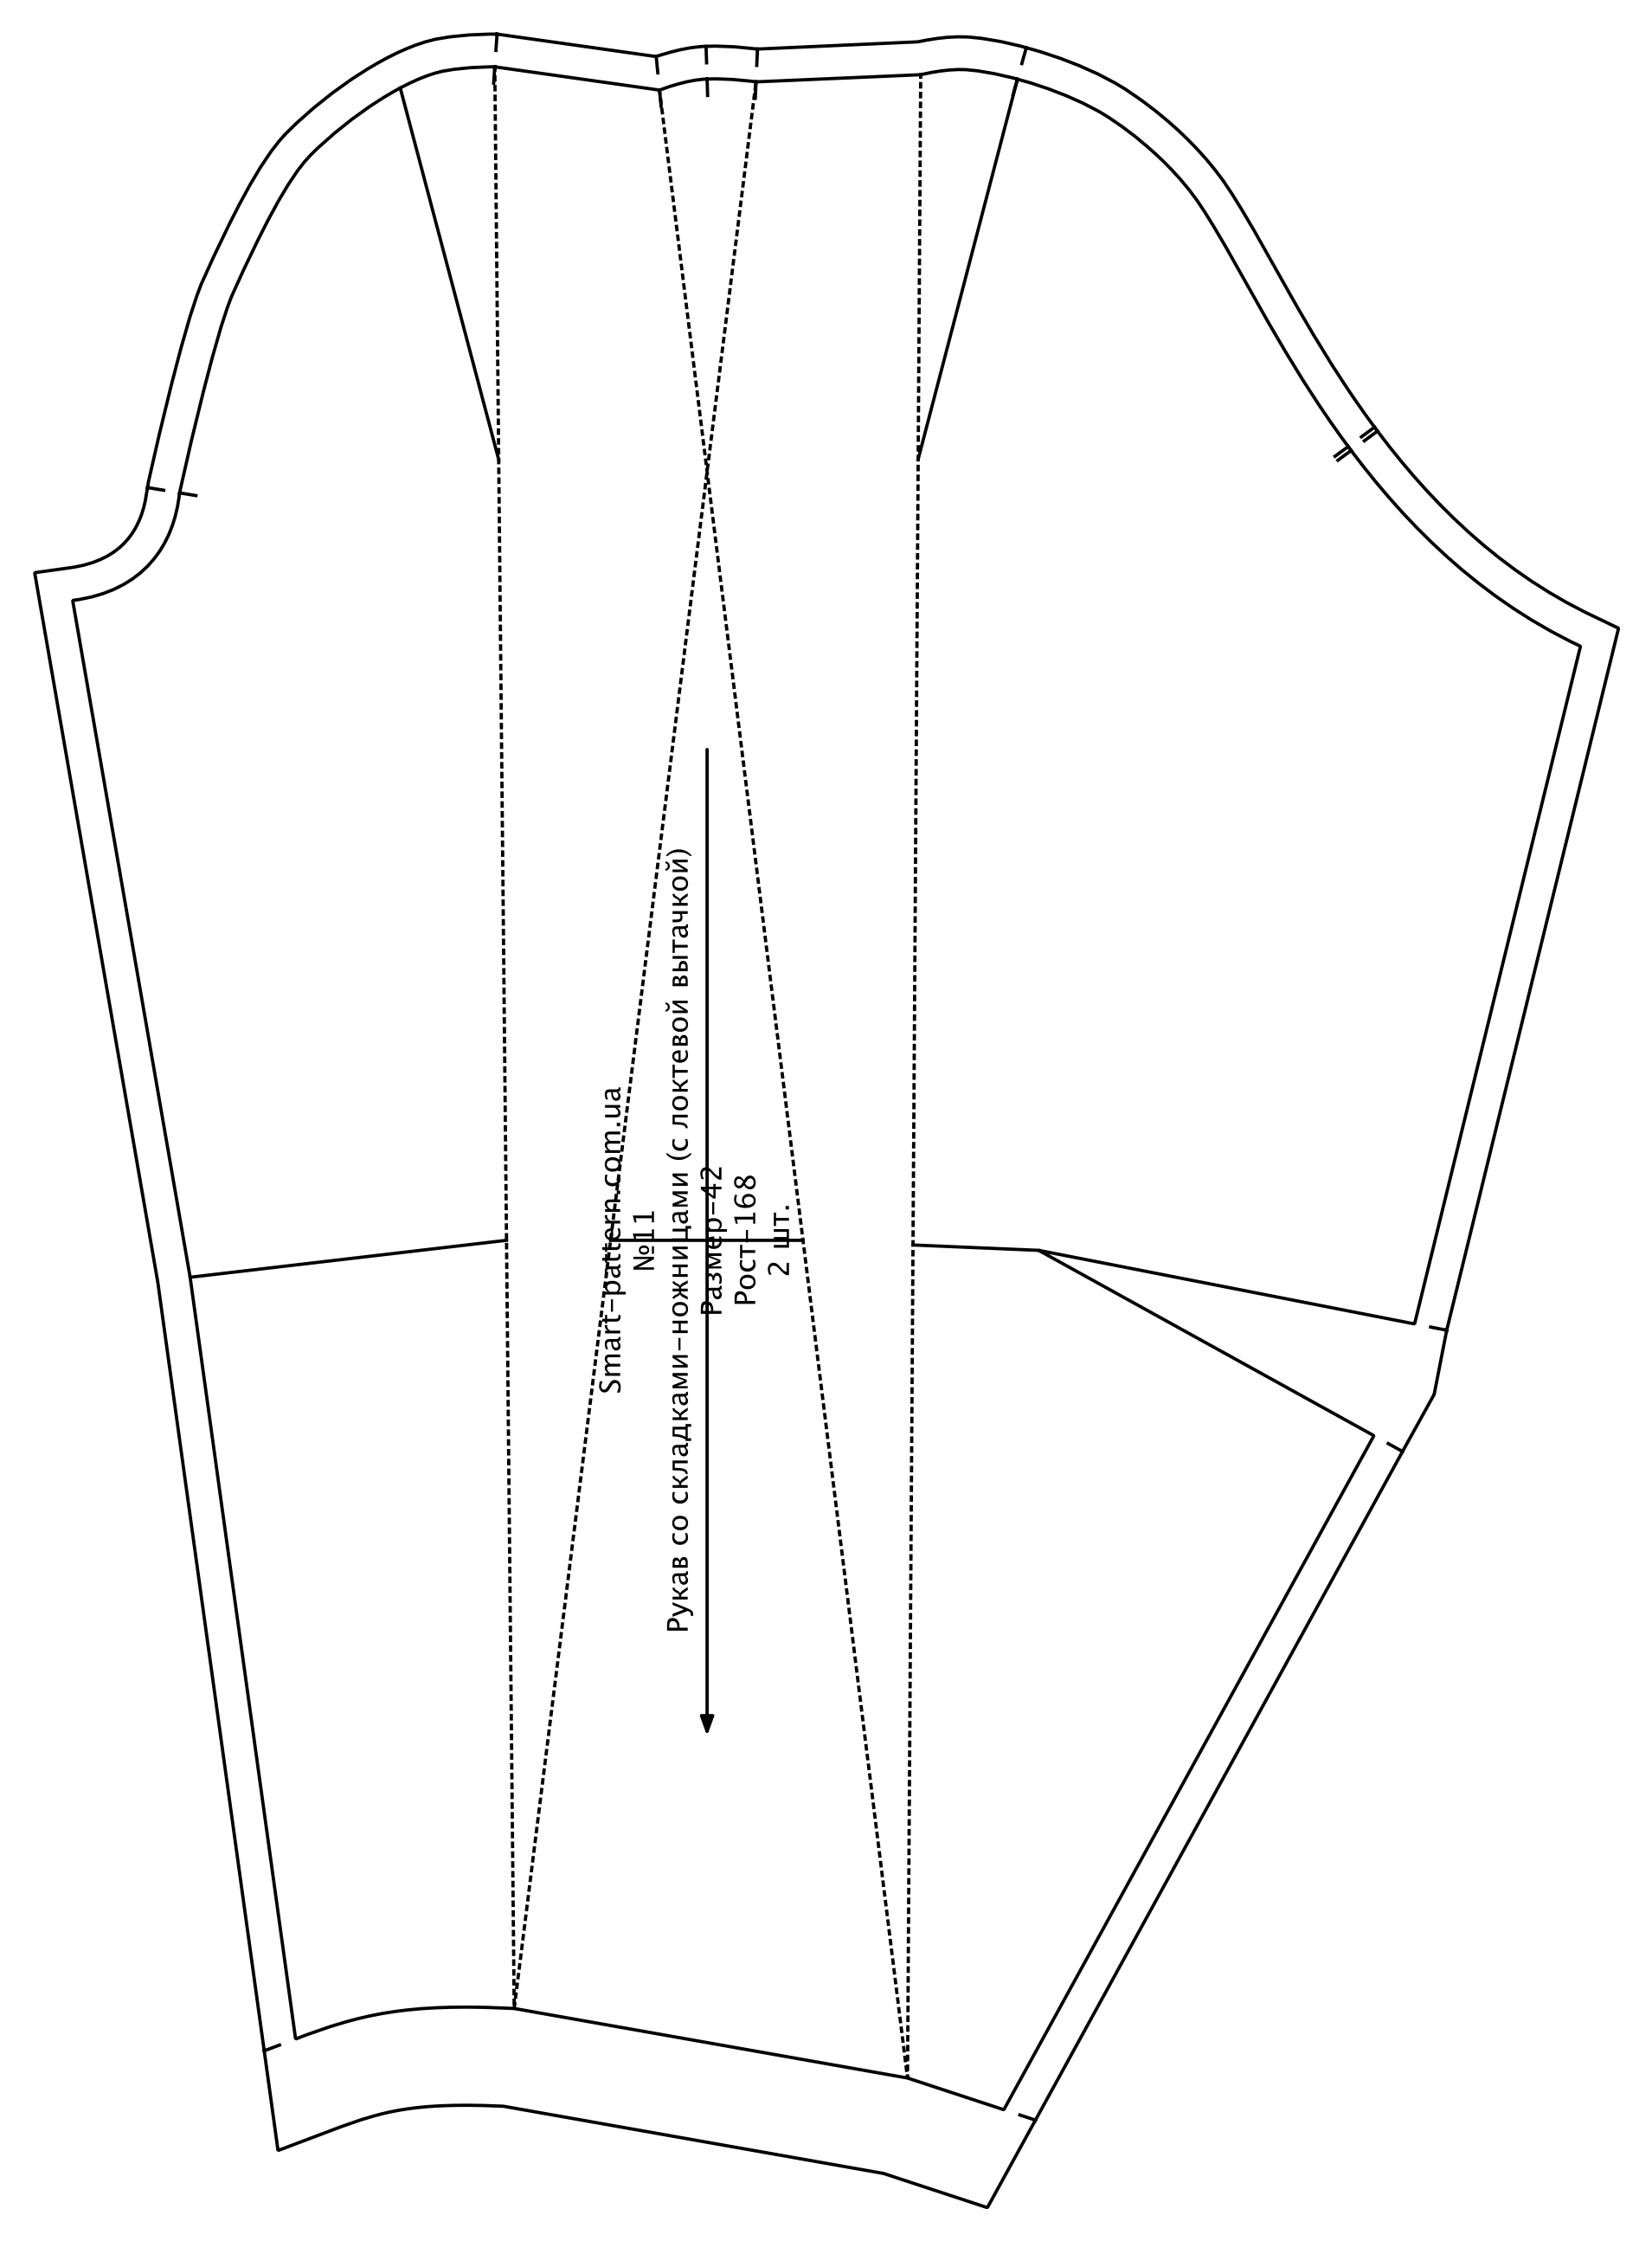 Набор рукавов к базовой основе платья полуприлигающего силуэта по методике «М. Мюллер и сын» (русский язык)